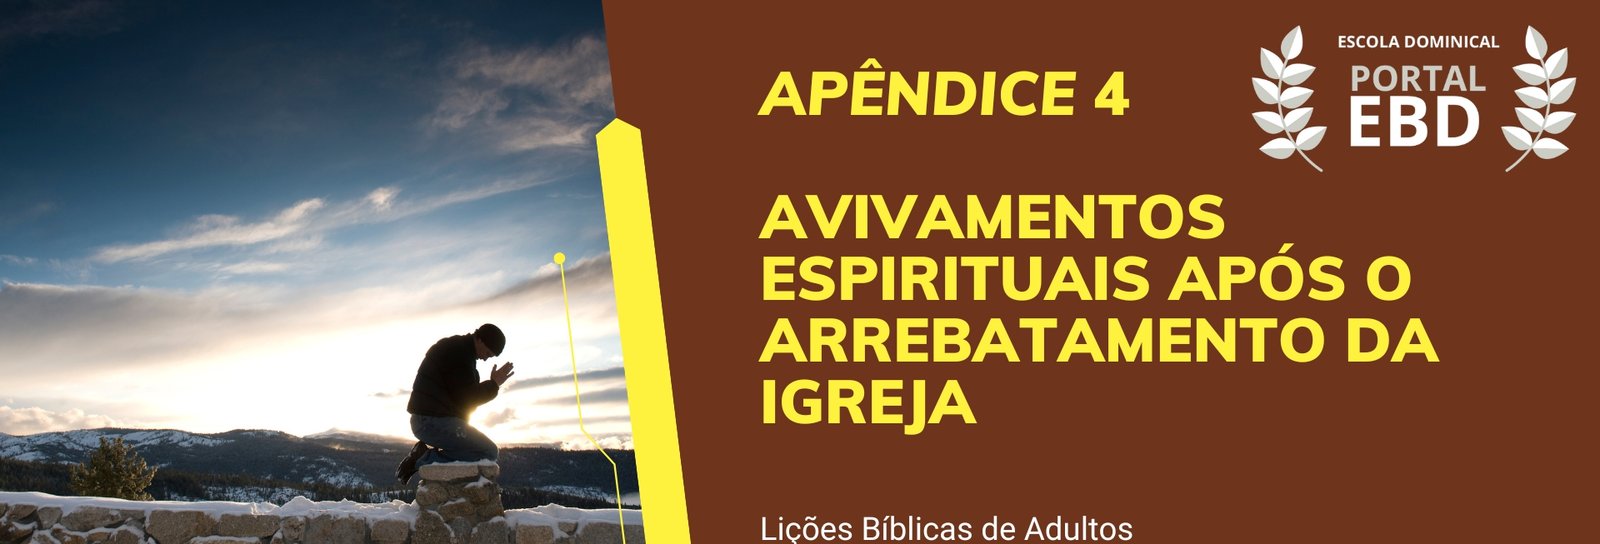 Apêndice 4 - Avivamentos espirituais após o arrebatamento da Igreja